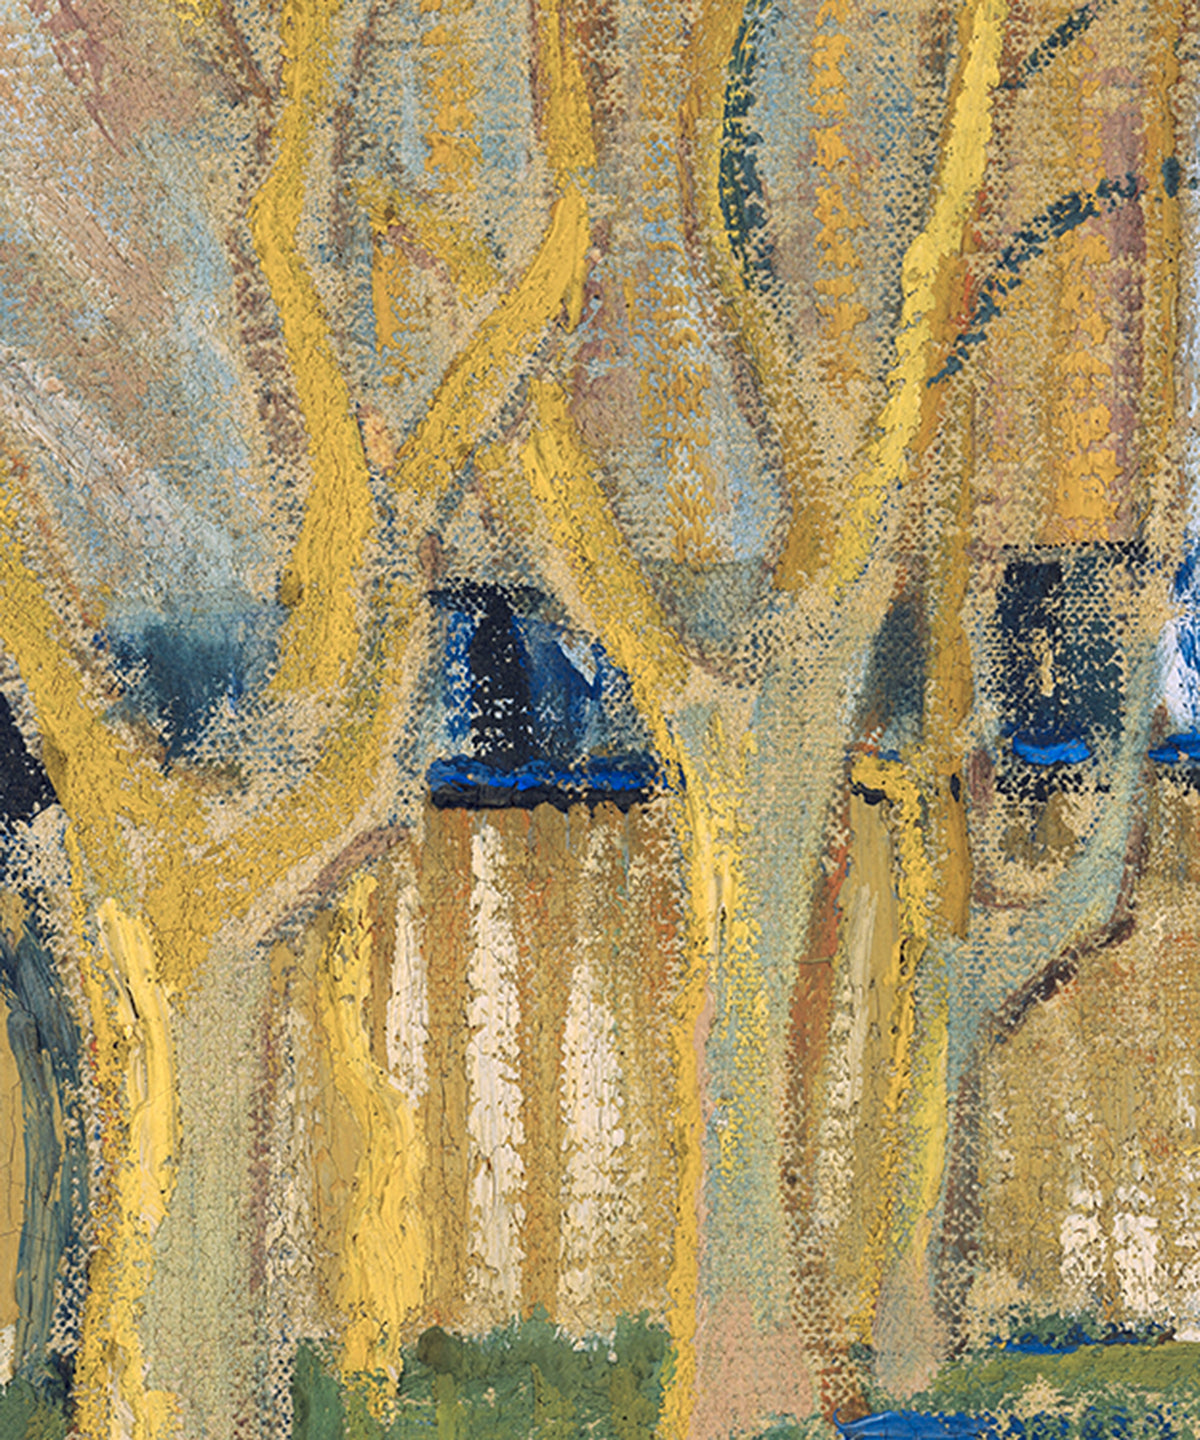 Le Train Bleu by Vincent van Gogh